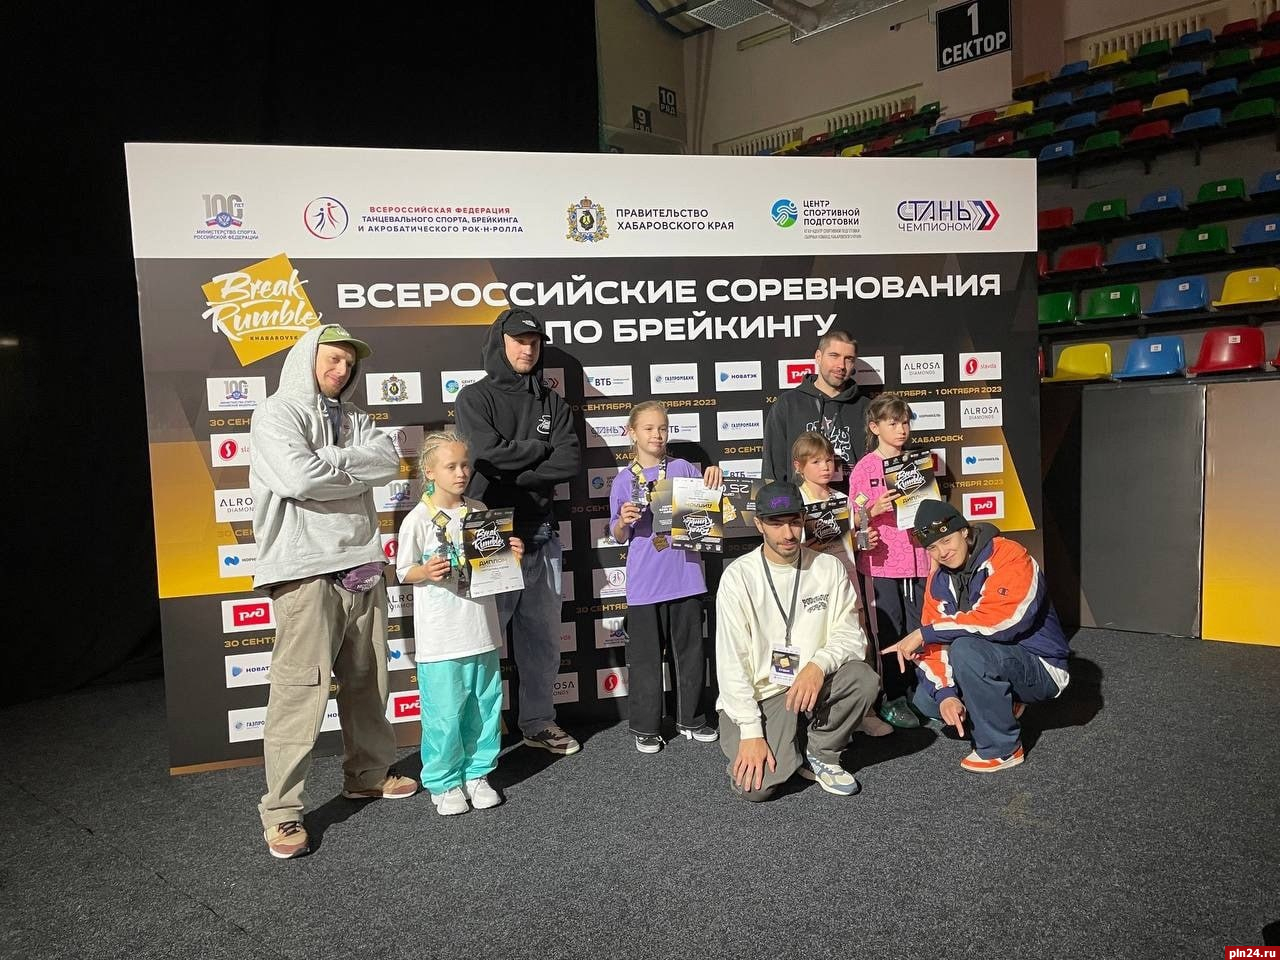 Псковские спортсмены стали лучшими на всероссийских соревнованиях по брейкингу